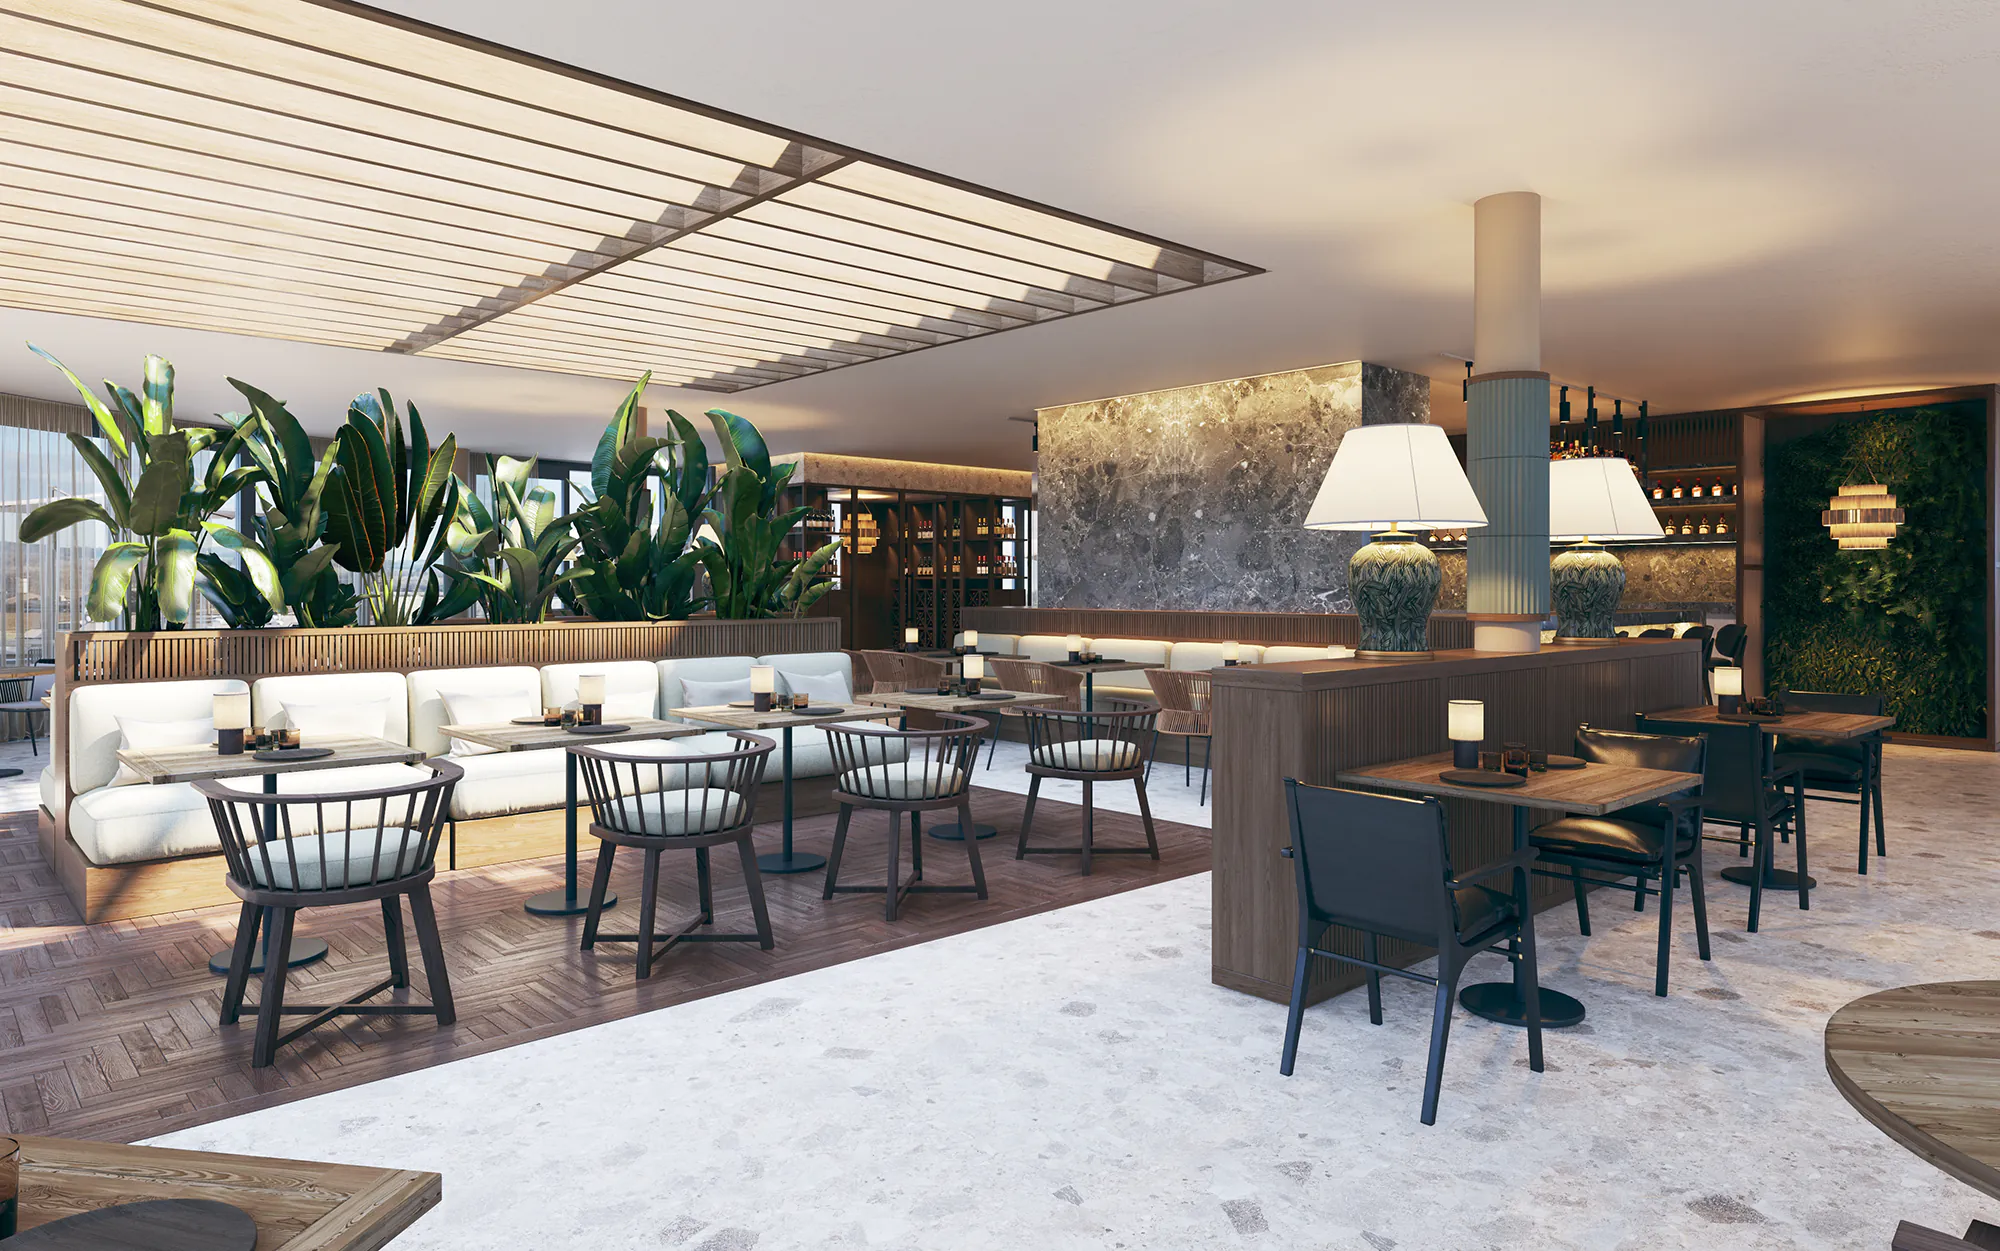 Architectural-rendering-restaurant-interior